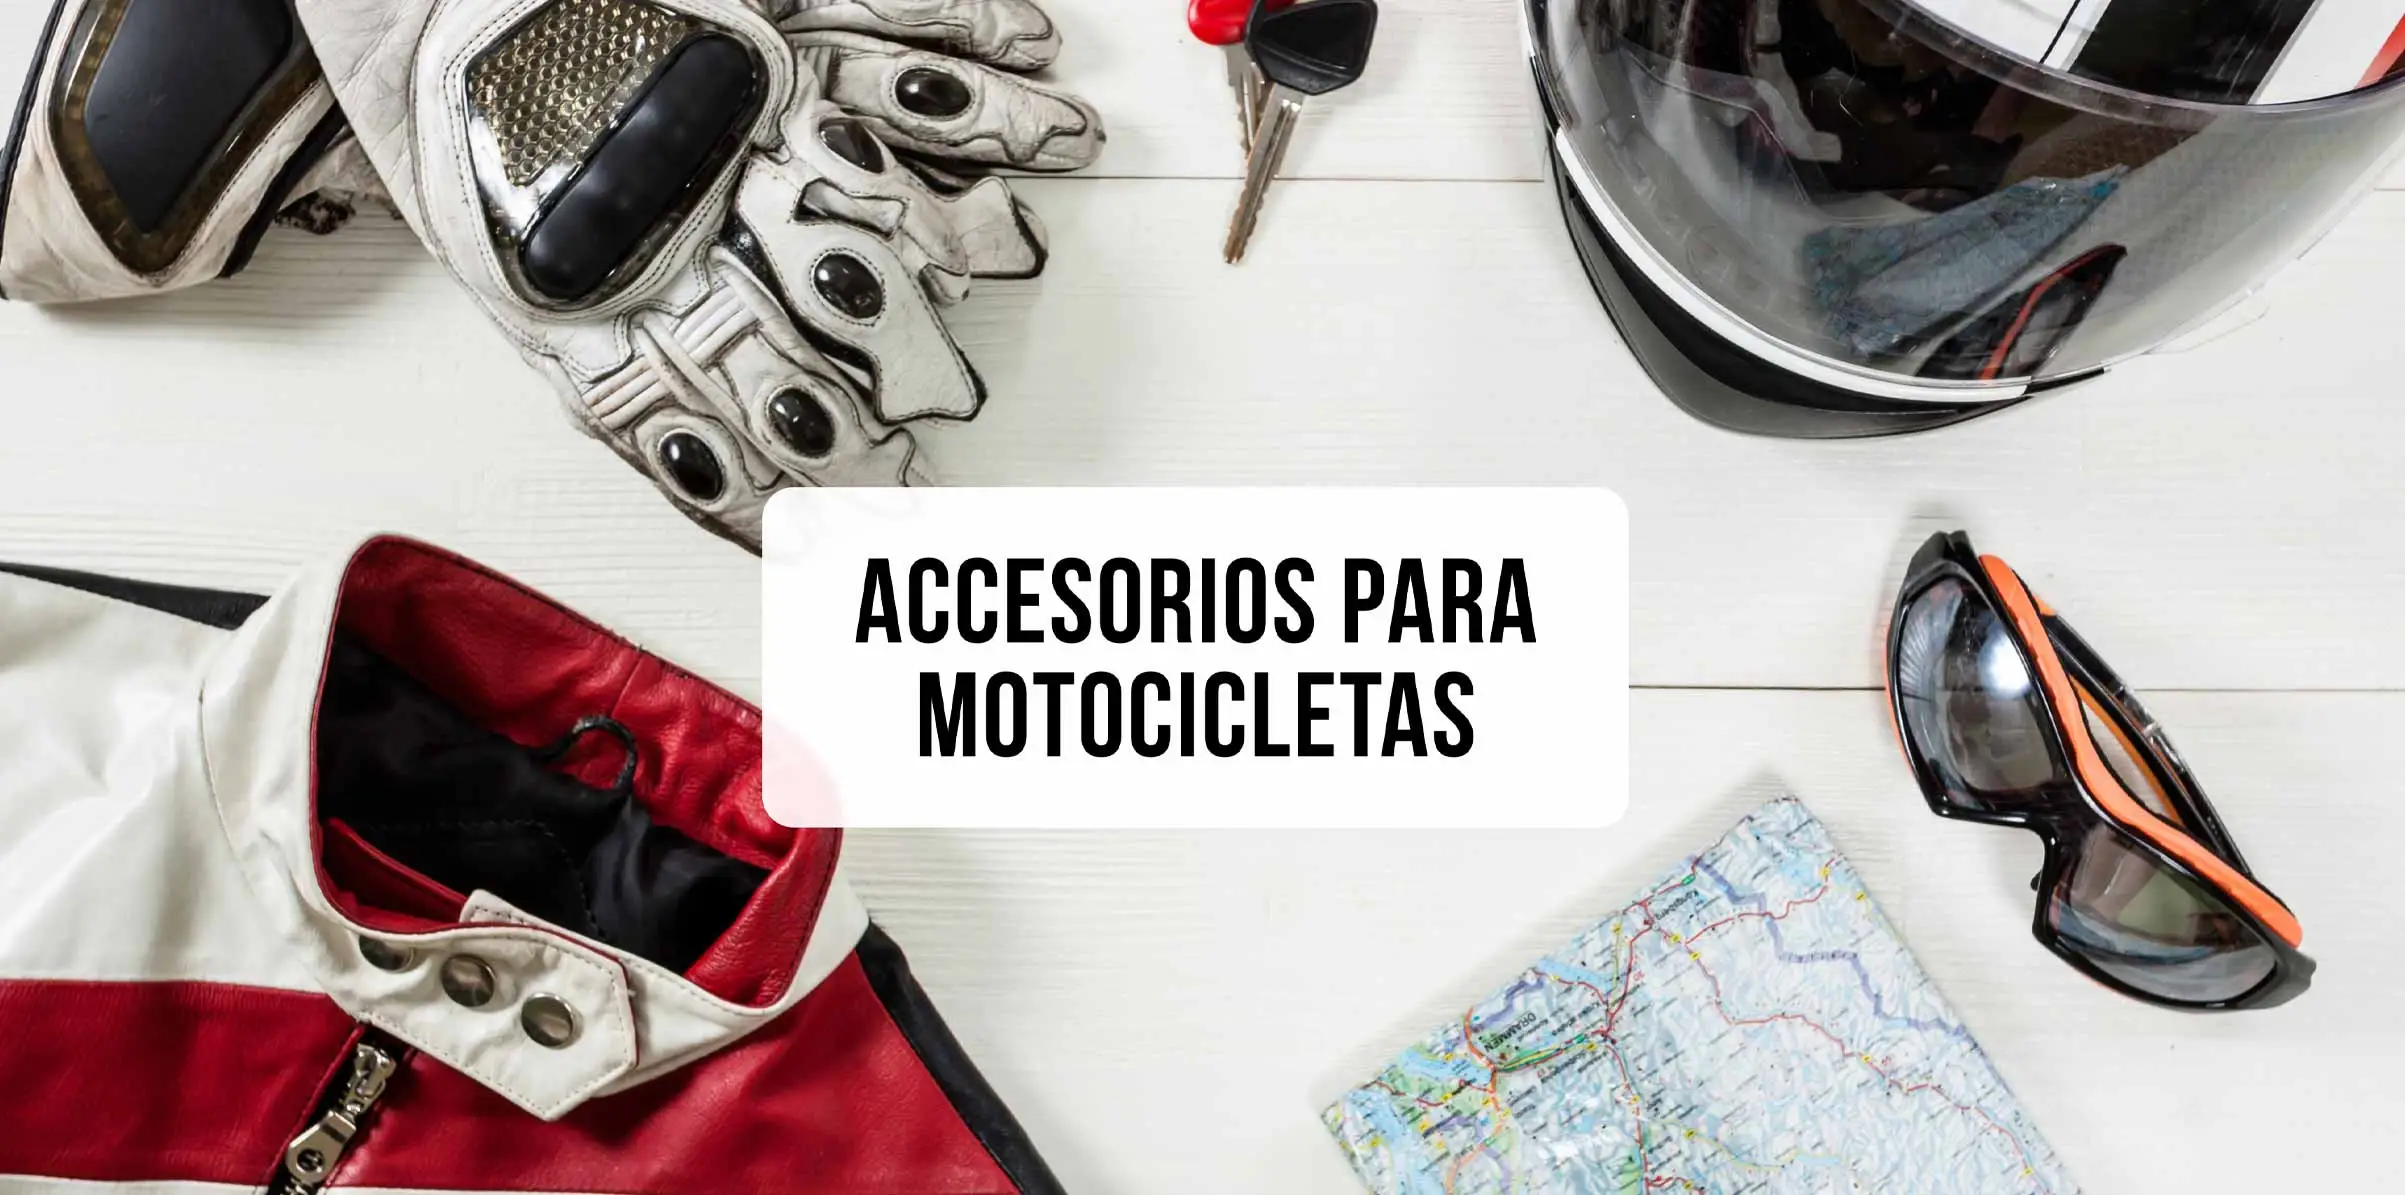 Accesorios para motocicletas